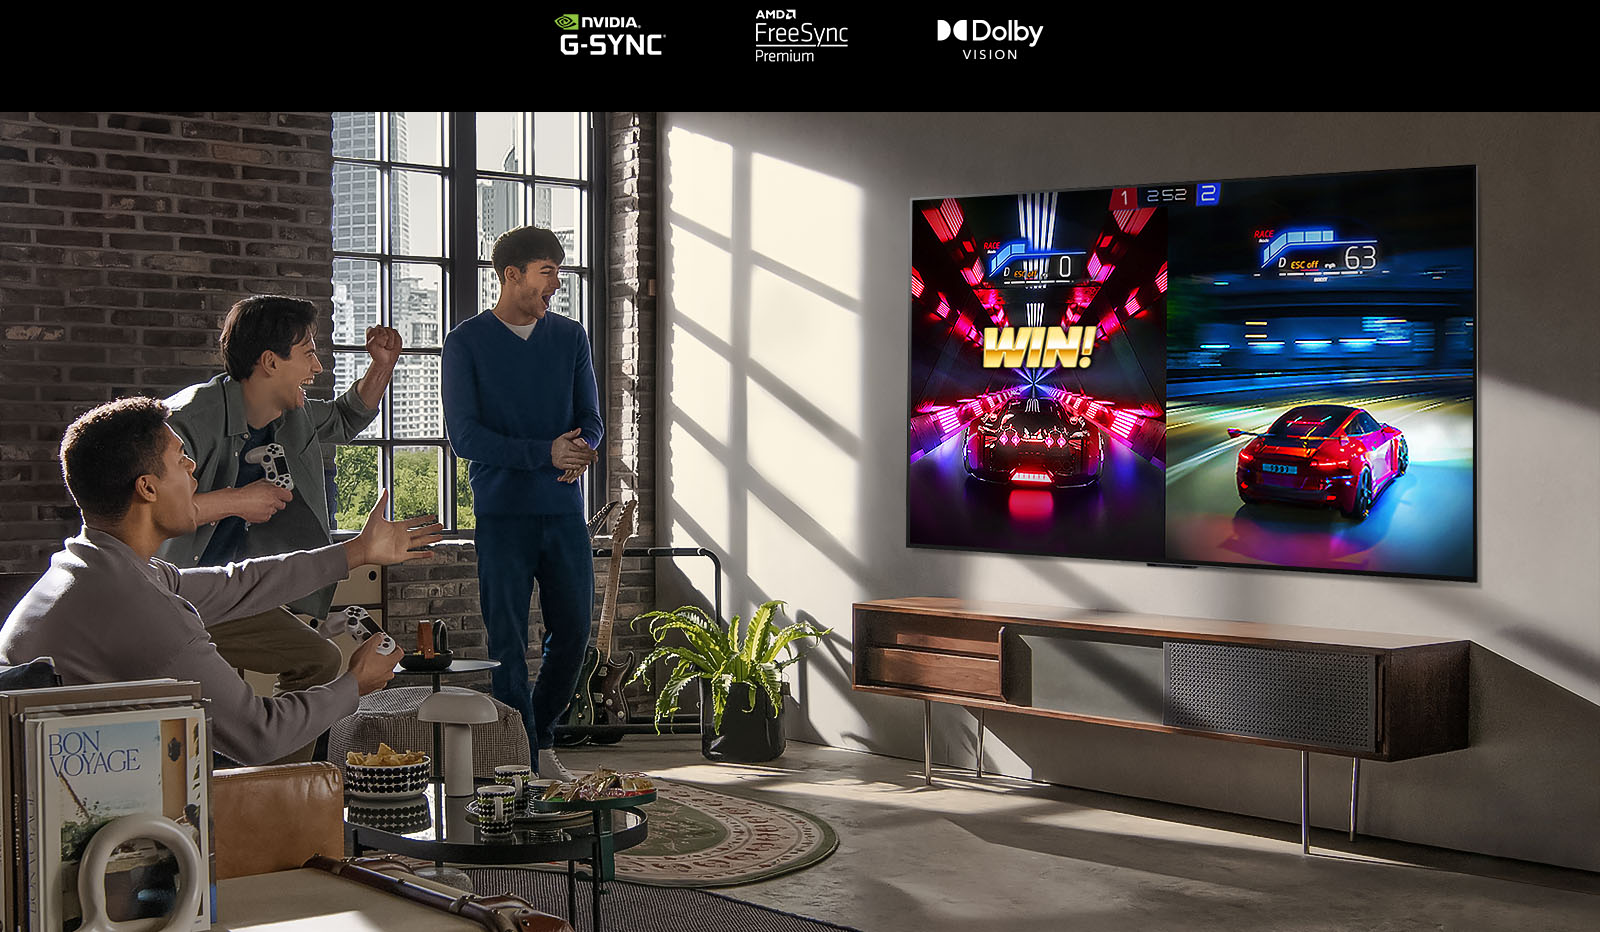 Μια εικόνα τριών ανδρών που παίζουν ένα παιχνίδι αγώνων σε μια τηλεόραση LG OLED, σε ένα σύγχρονο διαμέρισμα πόλης.